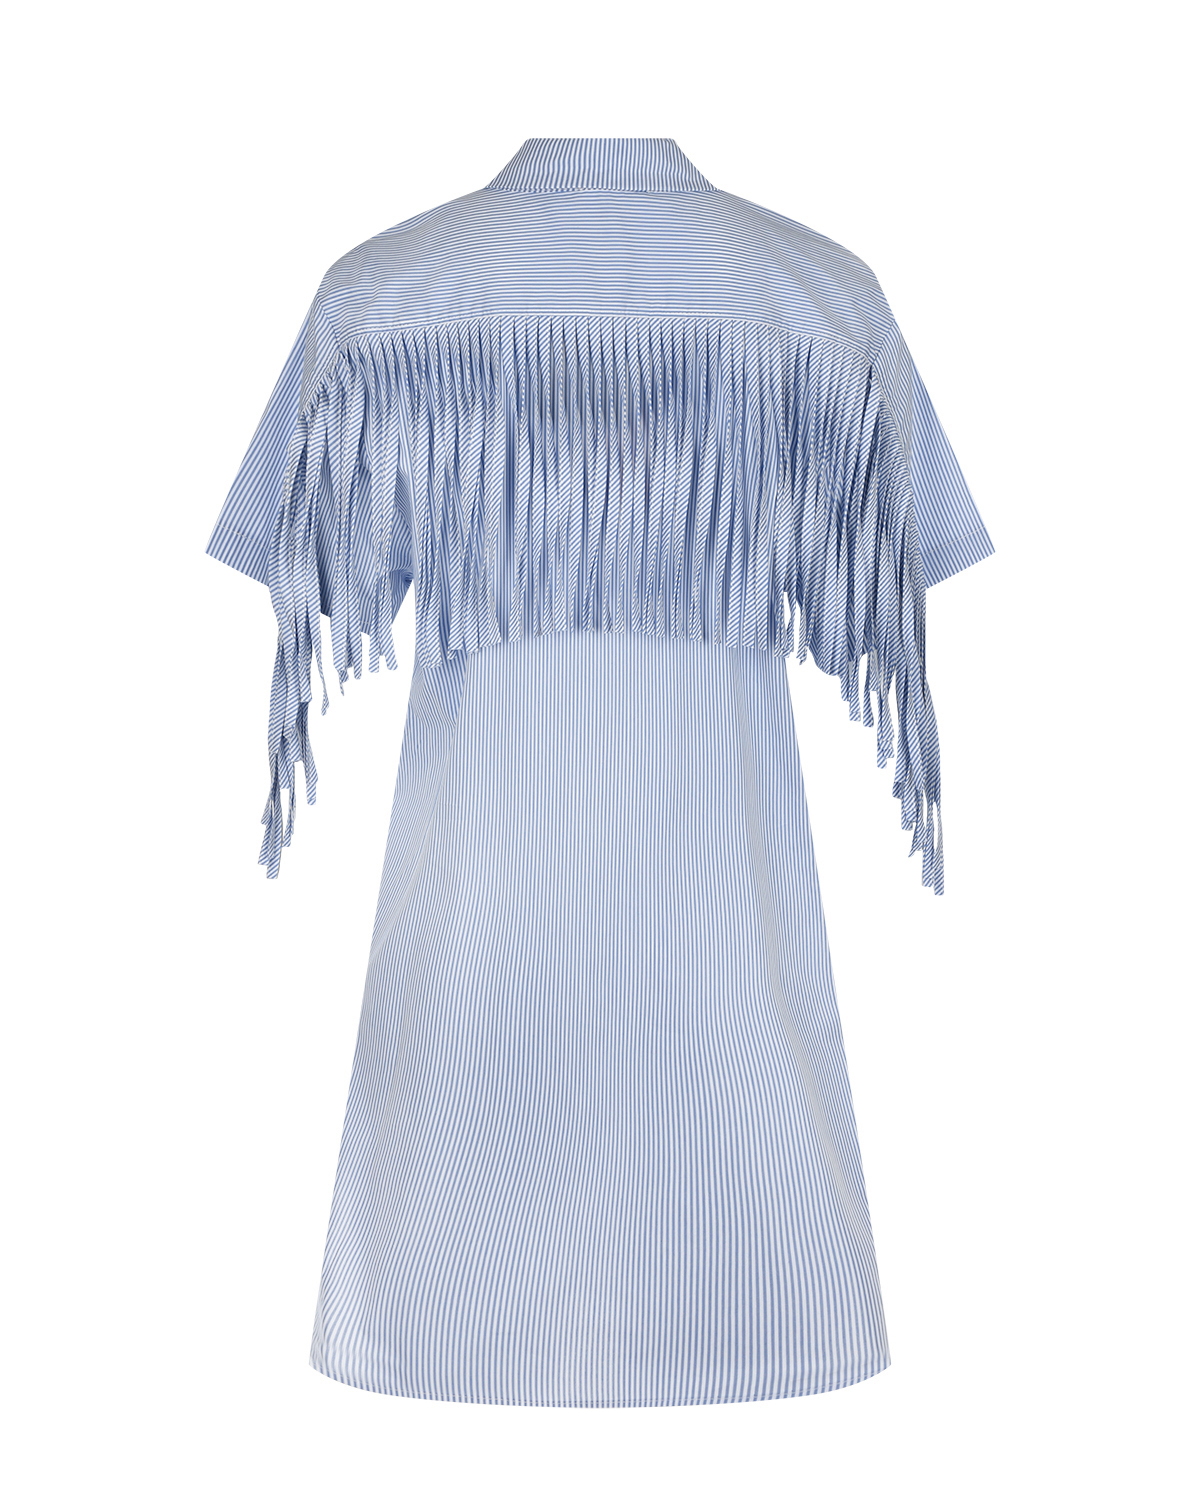 Платье-рубашка с бахромой Attesa, размер 38, цвет голубой - фото 5